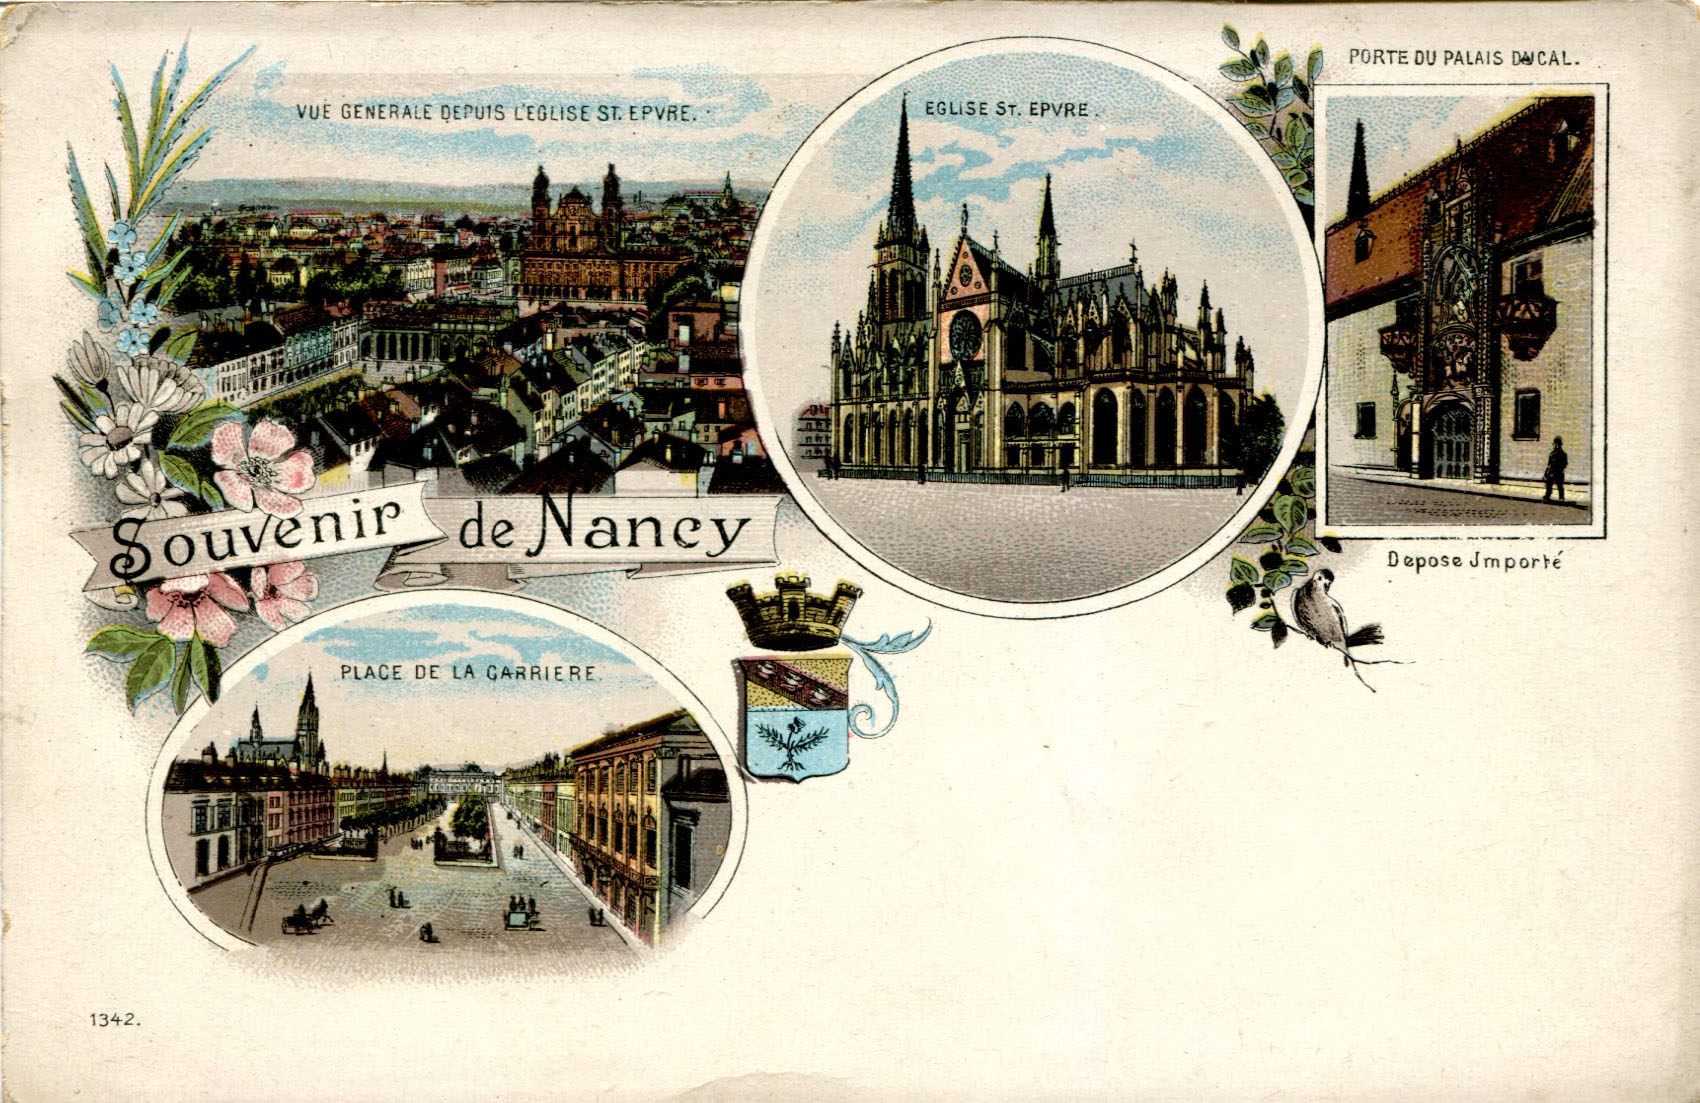 265 Souvenir de Nancy